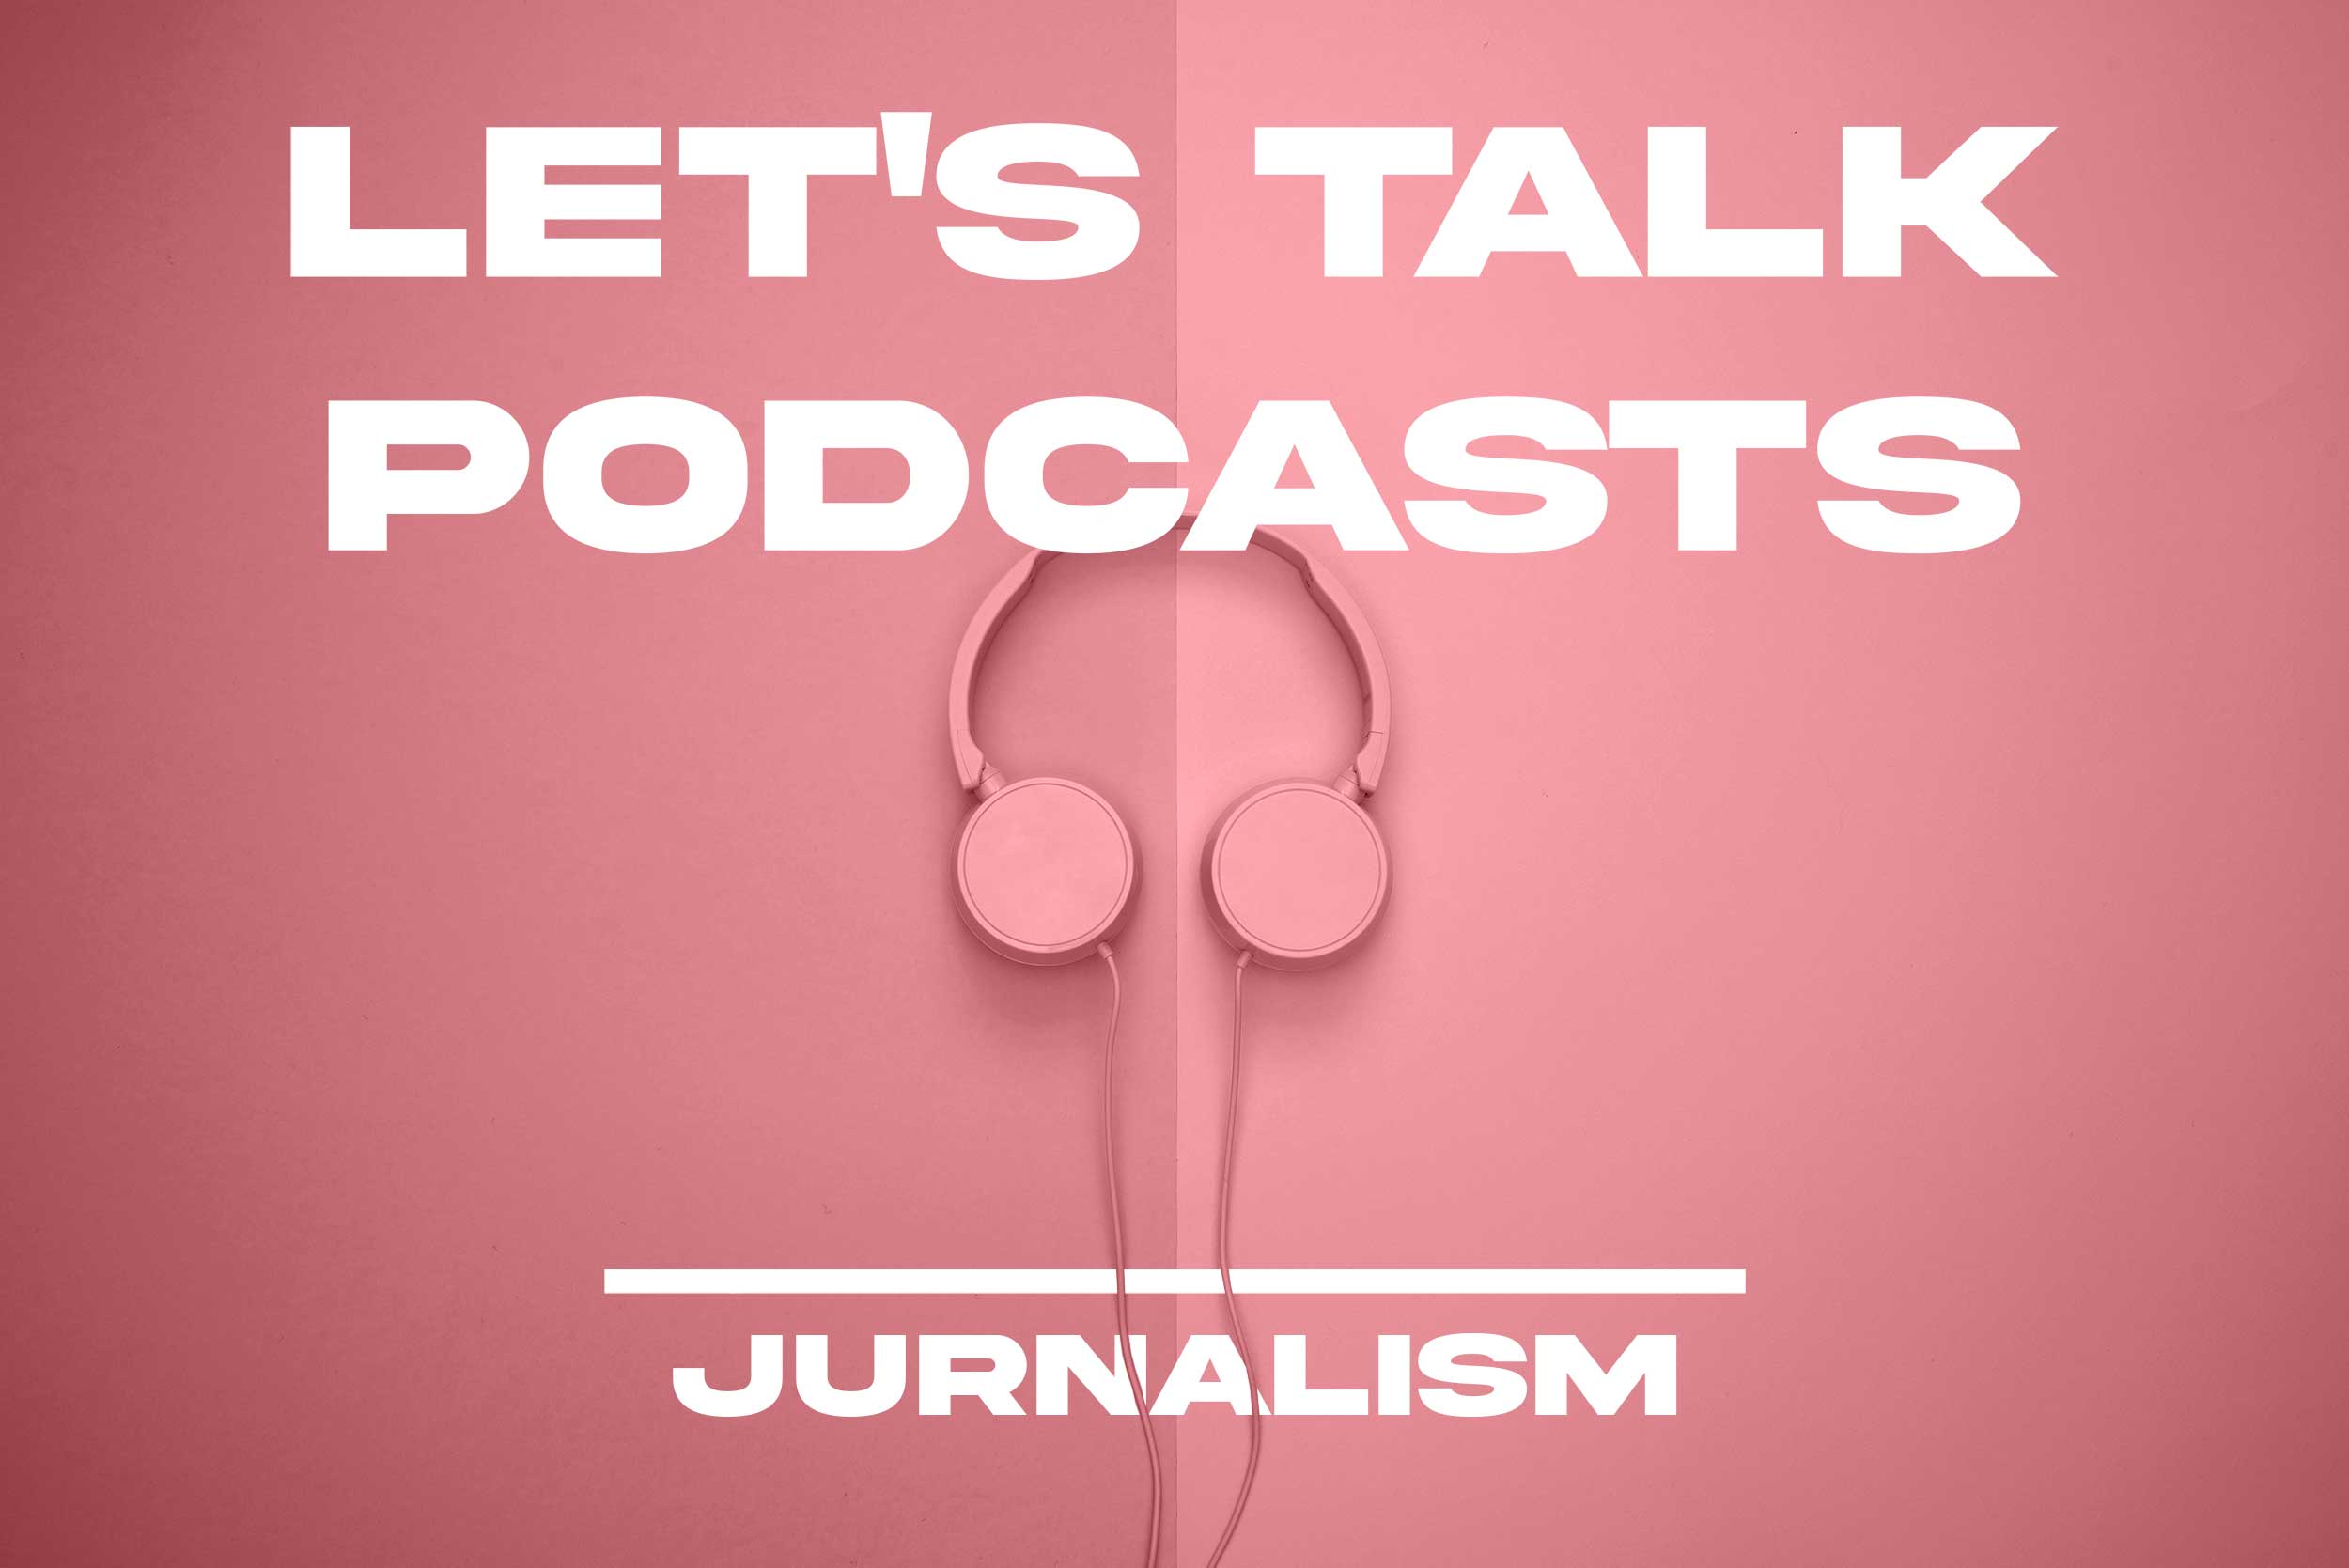 let's talk podcasts jurnalism